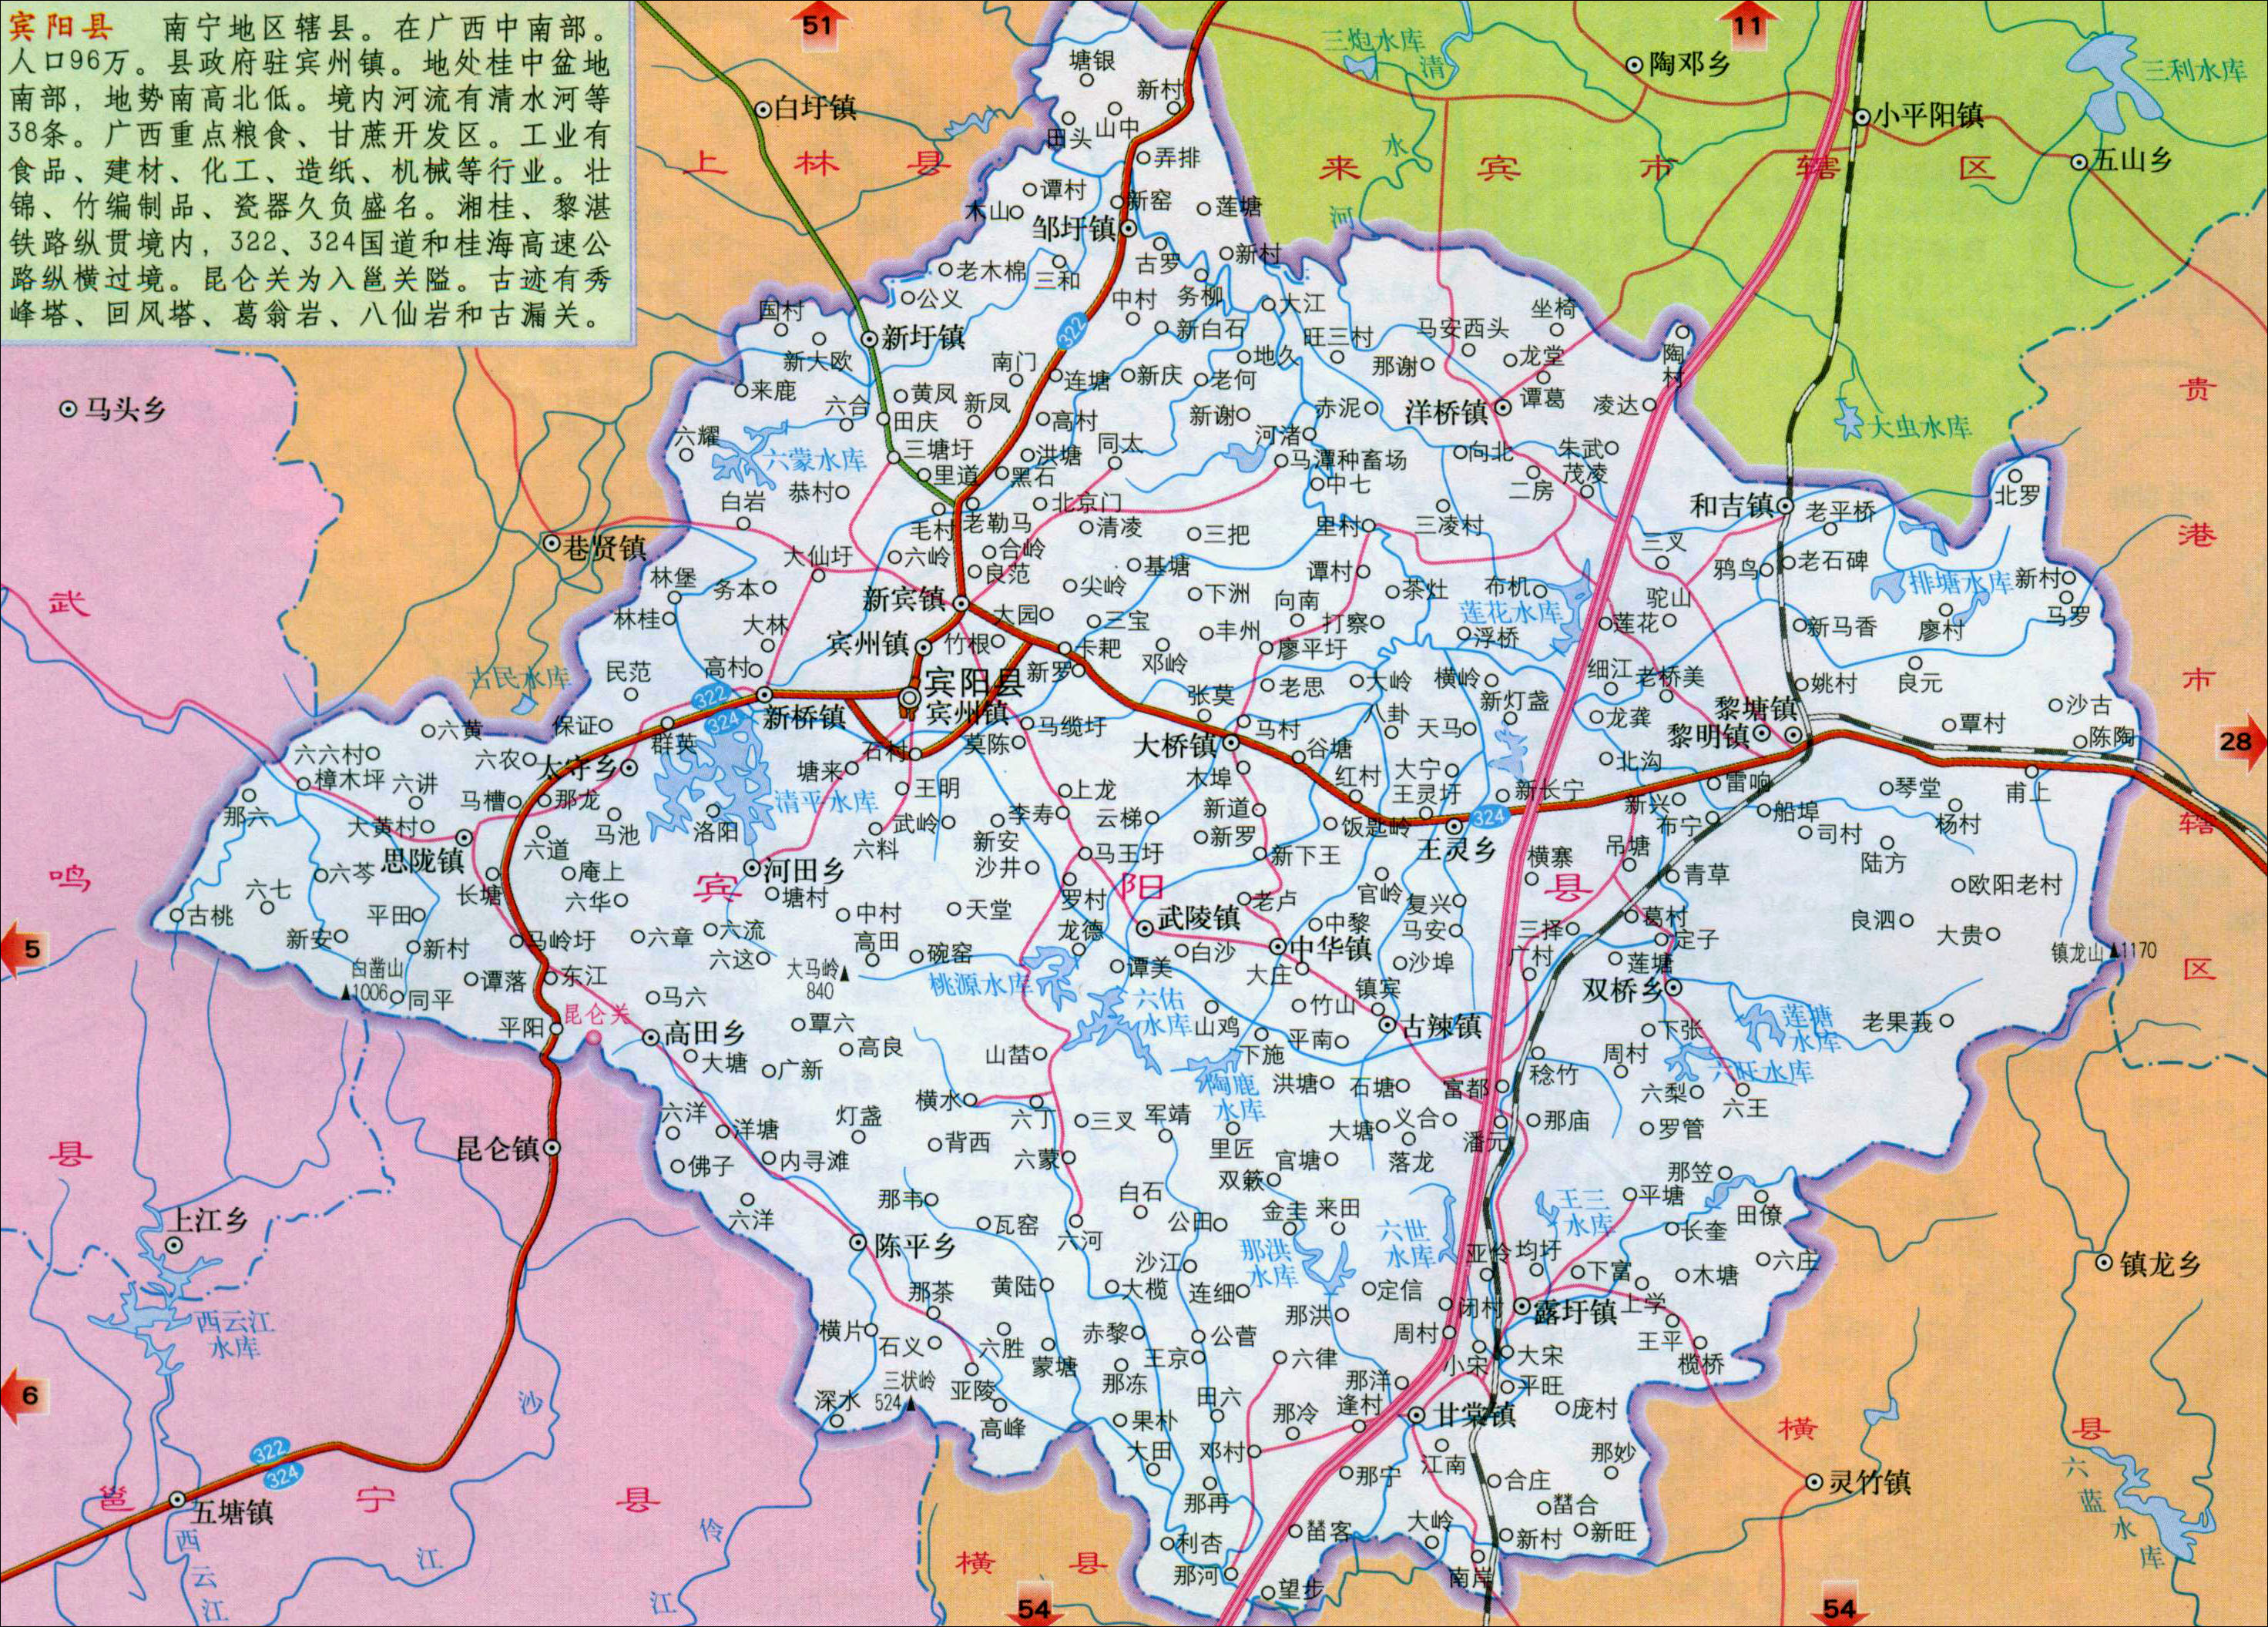 中国地图 广西 南宁市图片